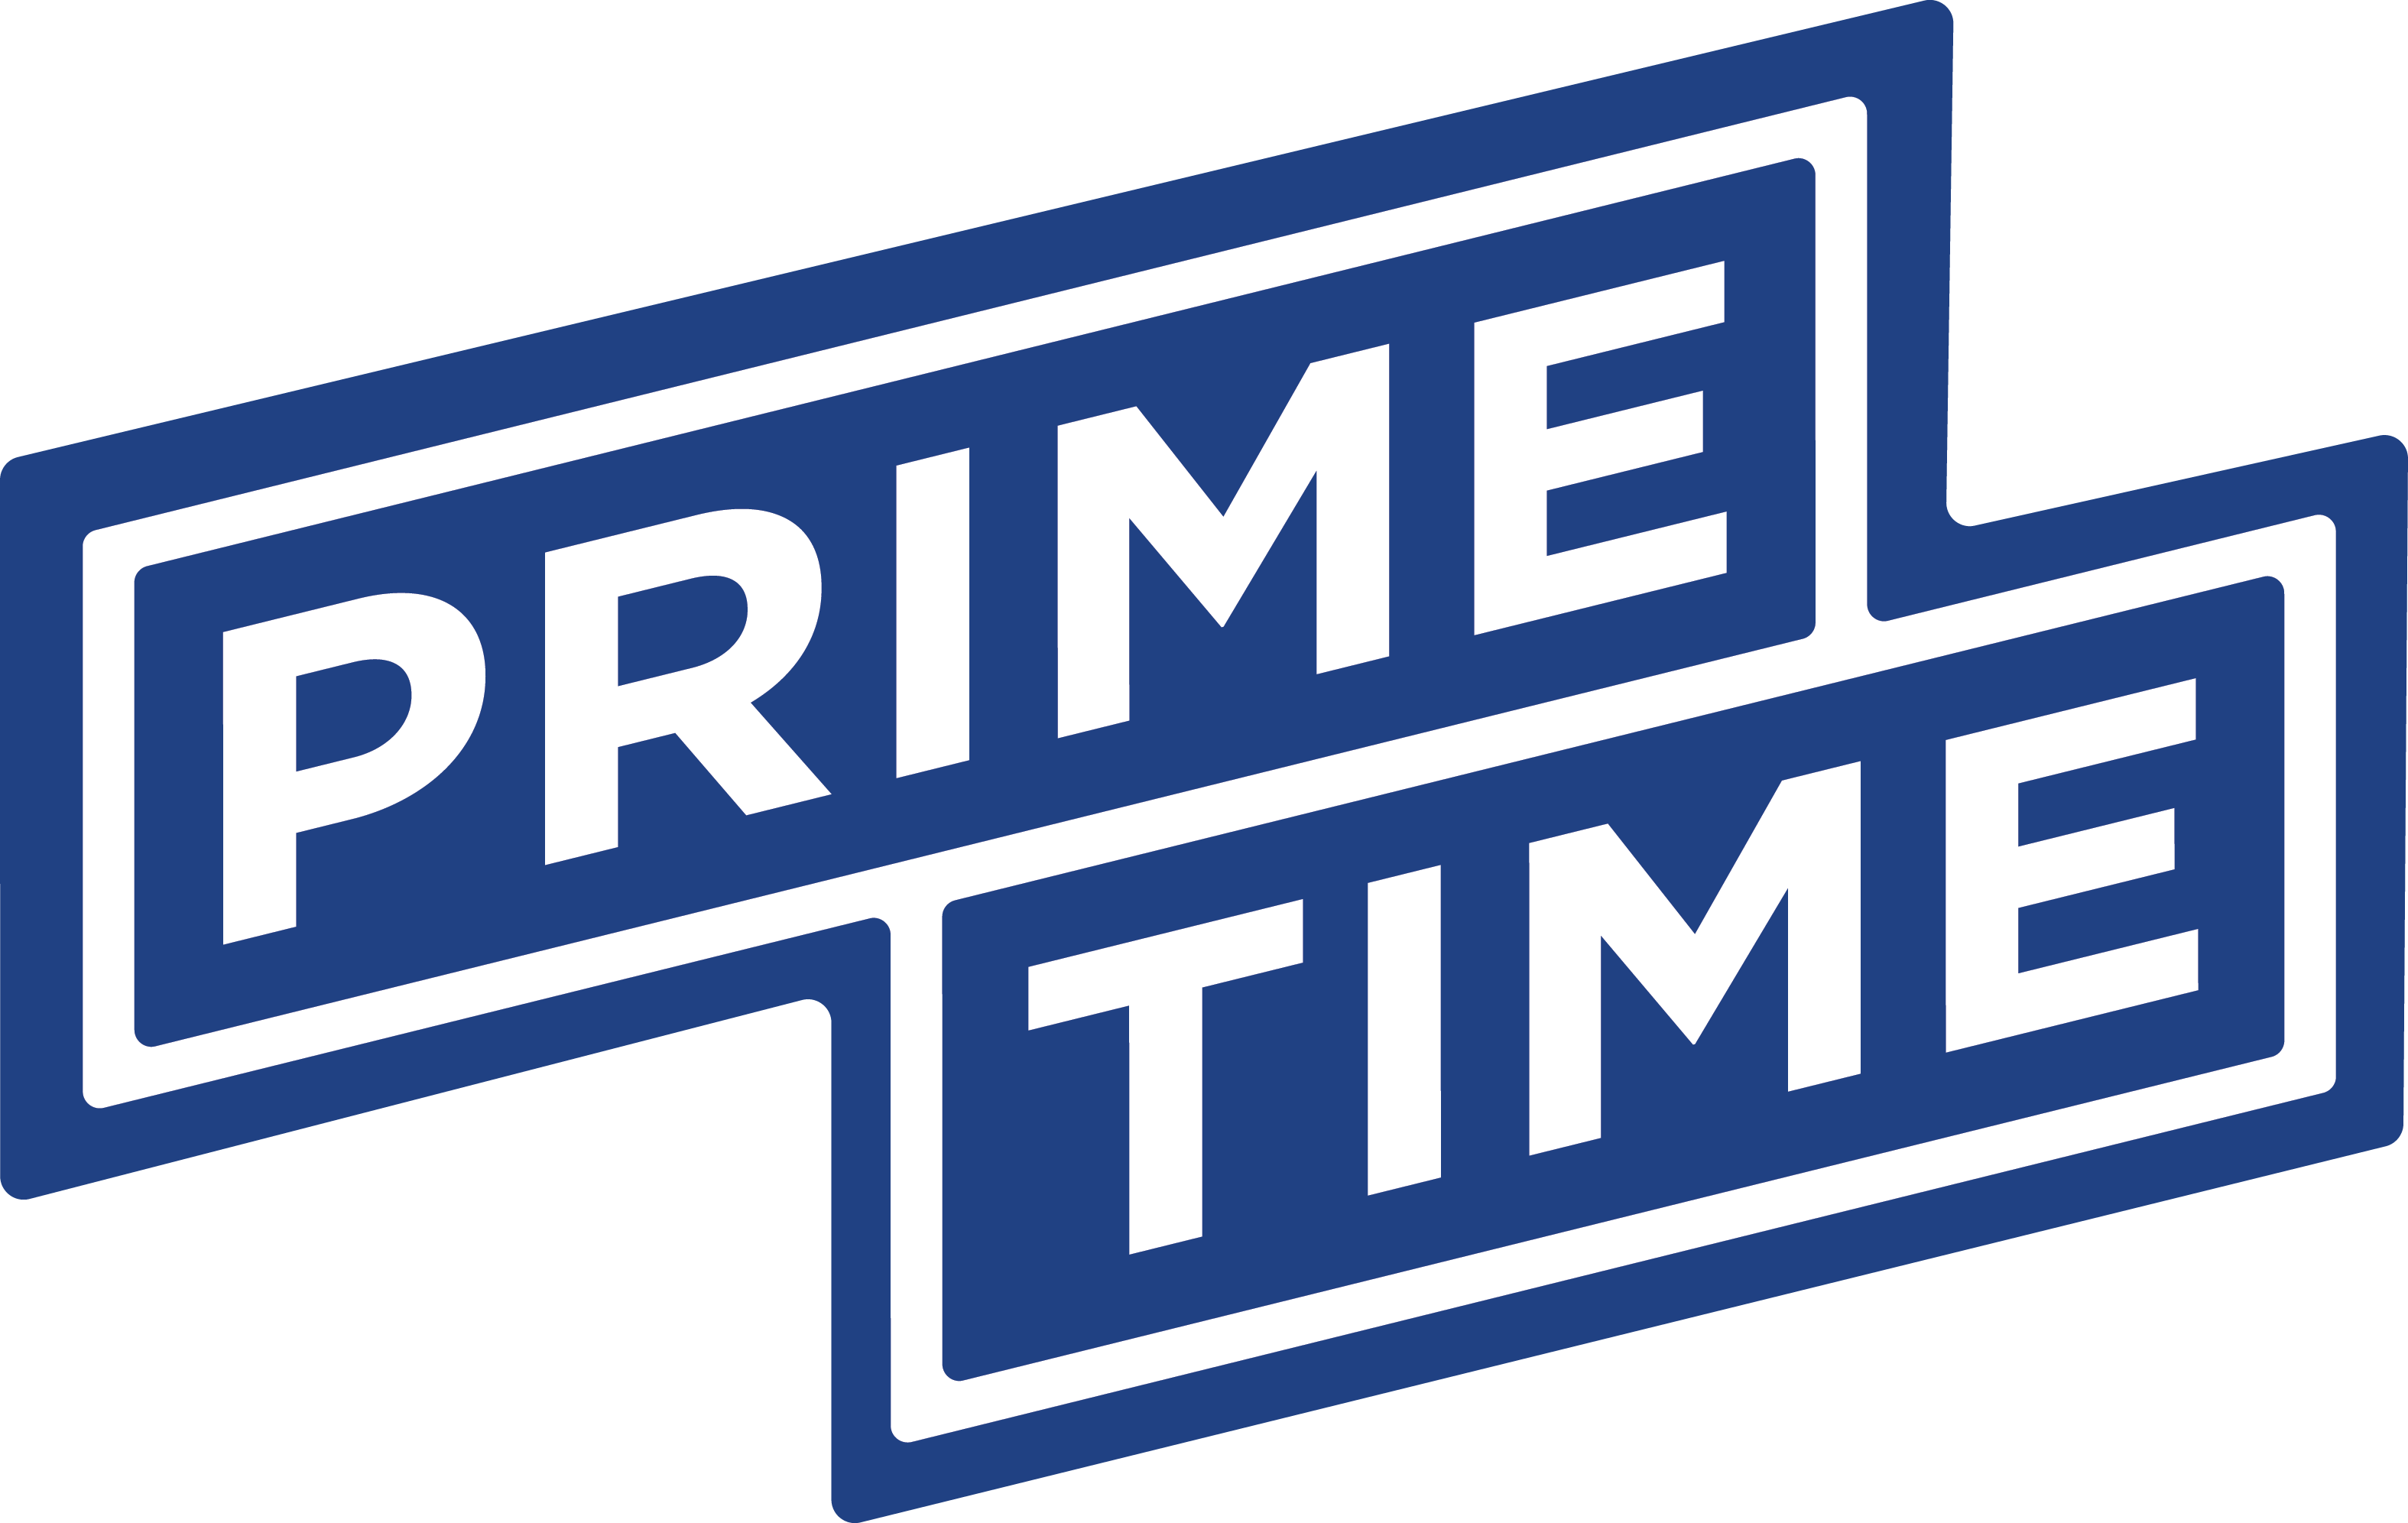 Find Prime – PRIME TIME LAGER